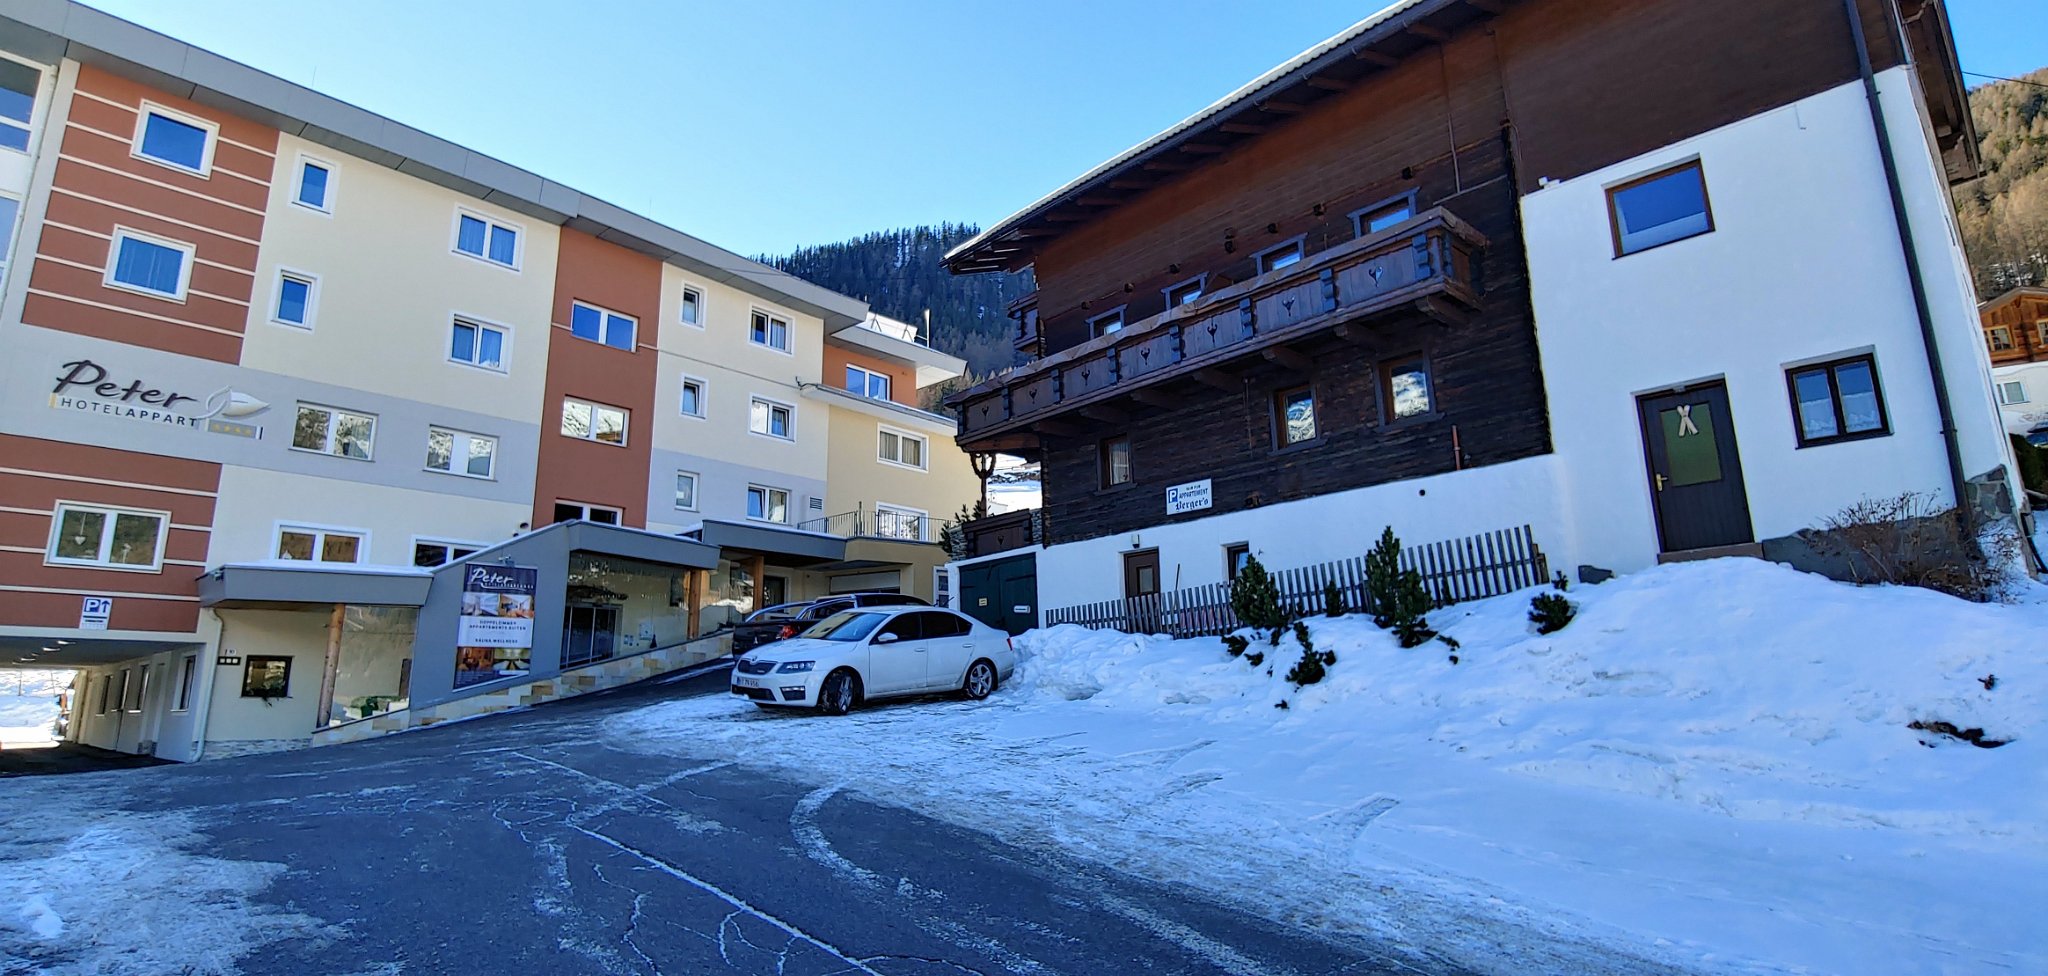 Sølden 15-22 jan 2022-014.jpg - Apartment Bergers - Innerwald - Sølden: god parkering, ski opbevaring og vært. God seks personers lejlighed, desværre fragmenteret over flere etager. Men hyggellig